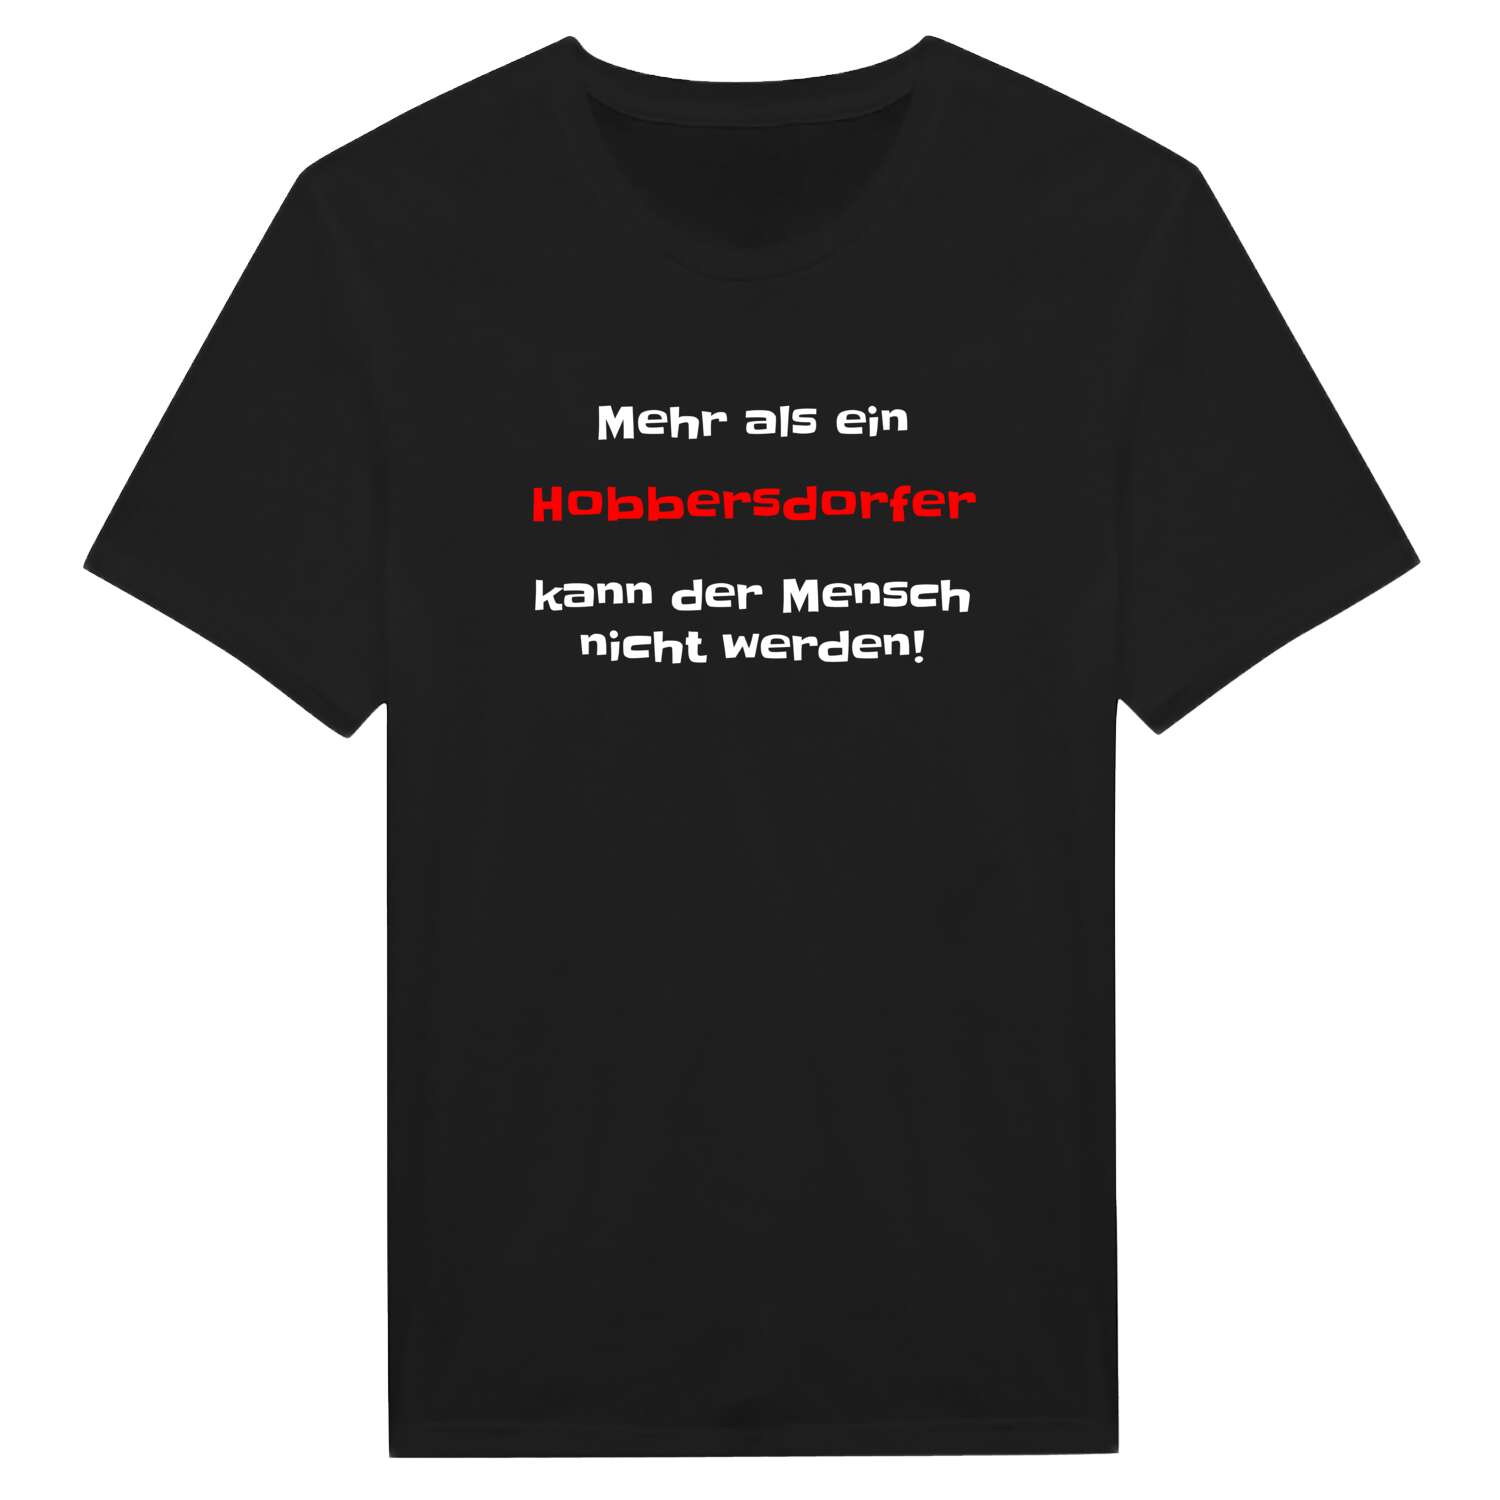 Hobbersdorf T-Shirt »Mehr als ein«